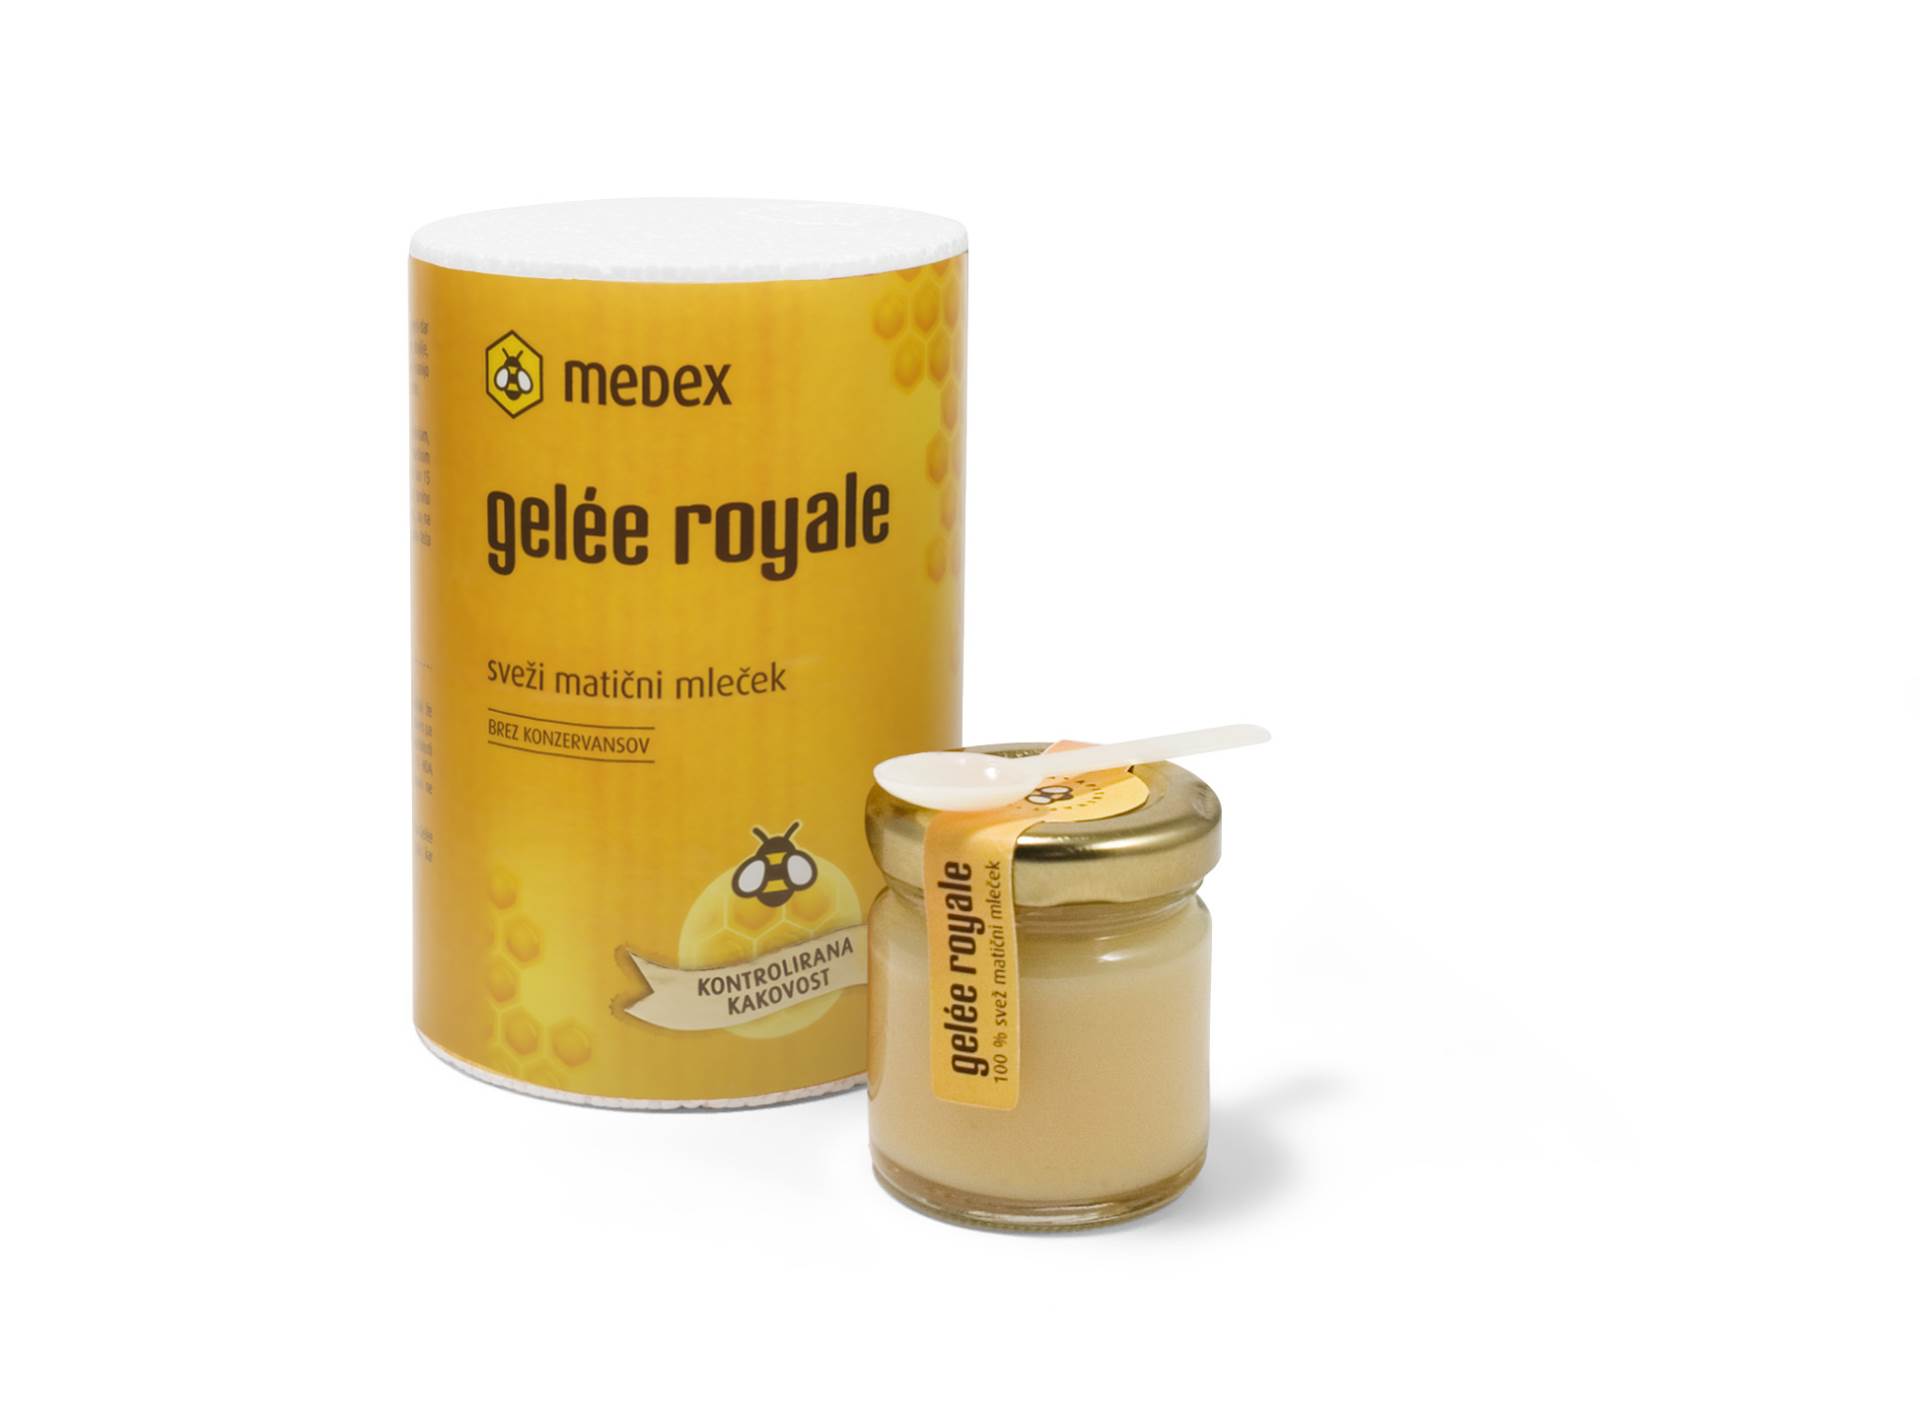 Medex Gelee royale – prirodna podrška imunološkom sustavu